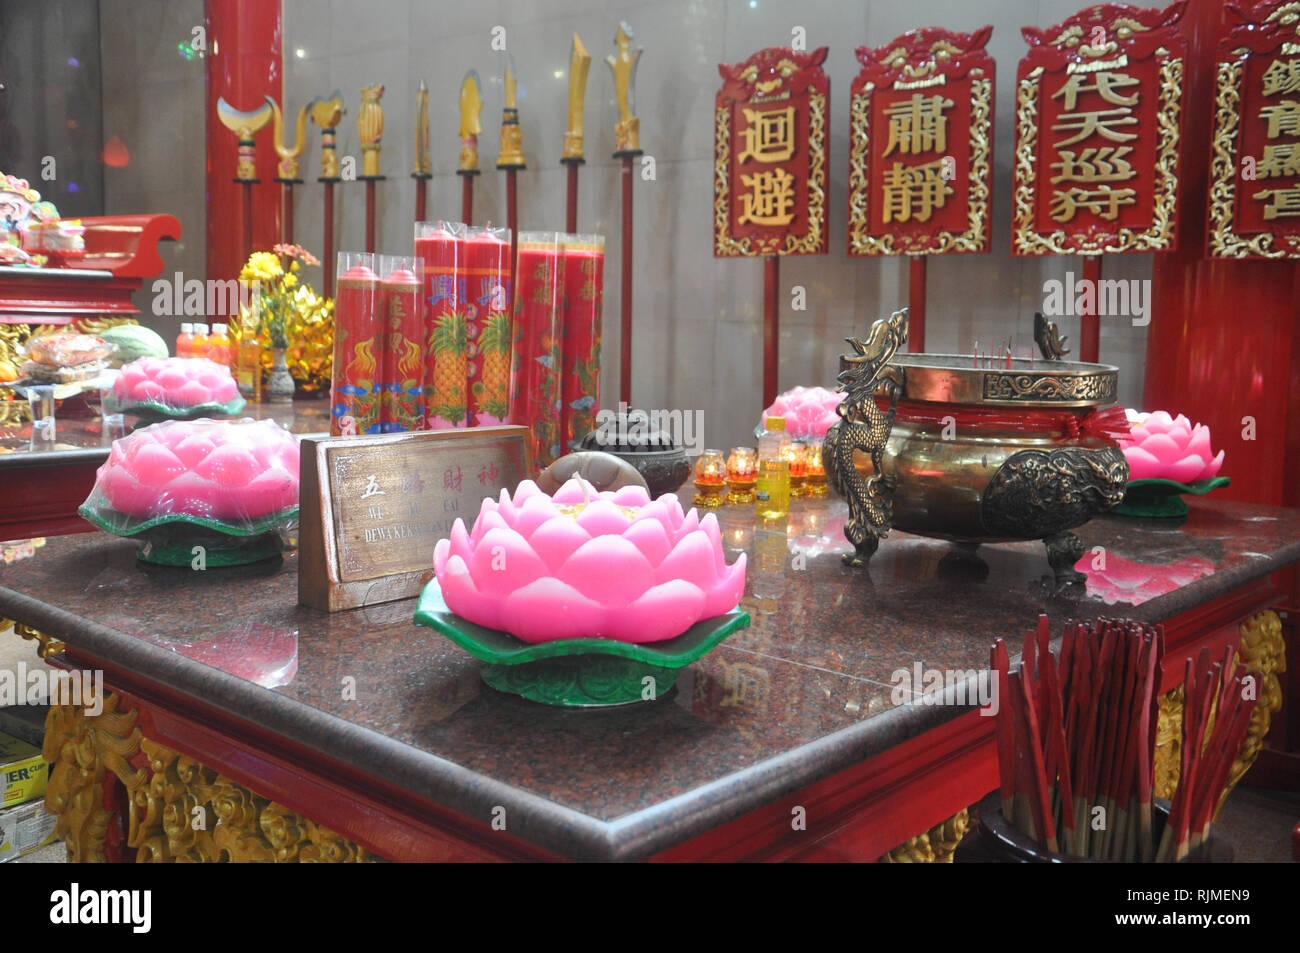 Situazione in Xian ma il tempio che è stato decorato per il nuovo anno lunare. Indonesiano discendenti cinesi si stanno preparando per le celebrazioni del Capodanno Foto Stock